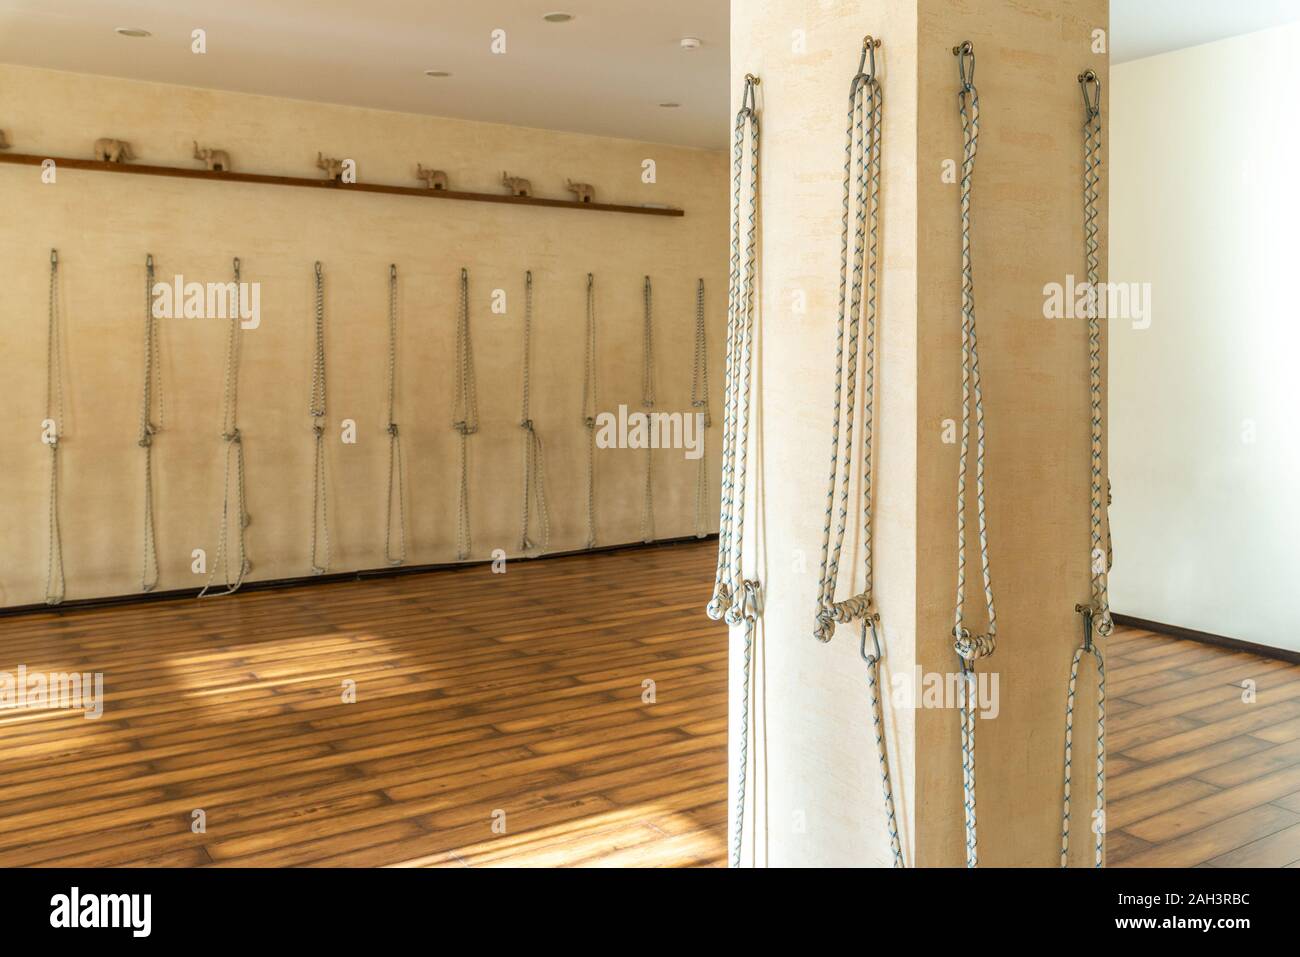 Yoga ropes hanging on studio wall, Iyengar yoga props Stock Photo - Alamy